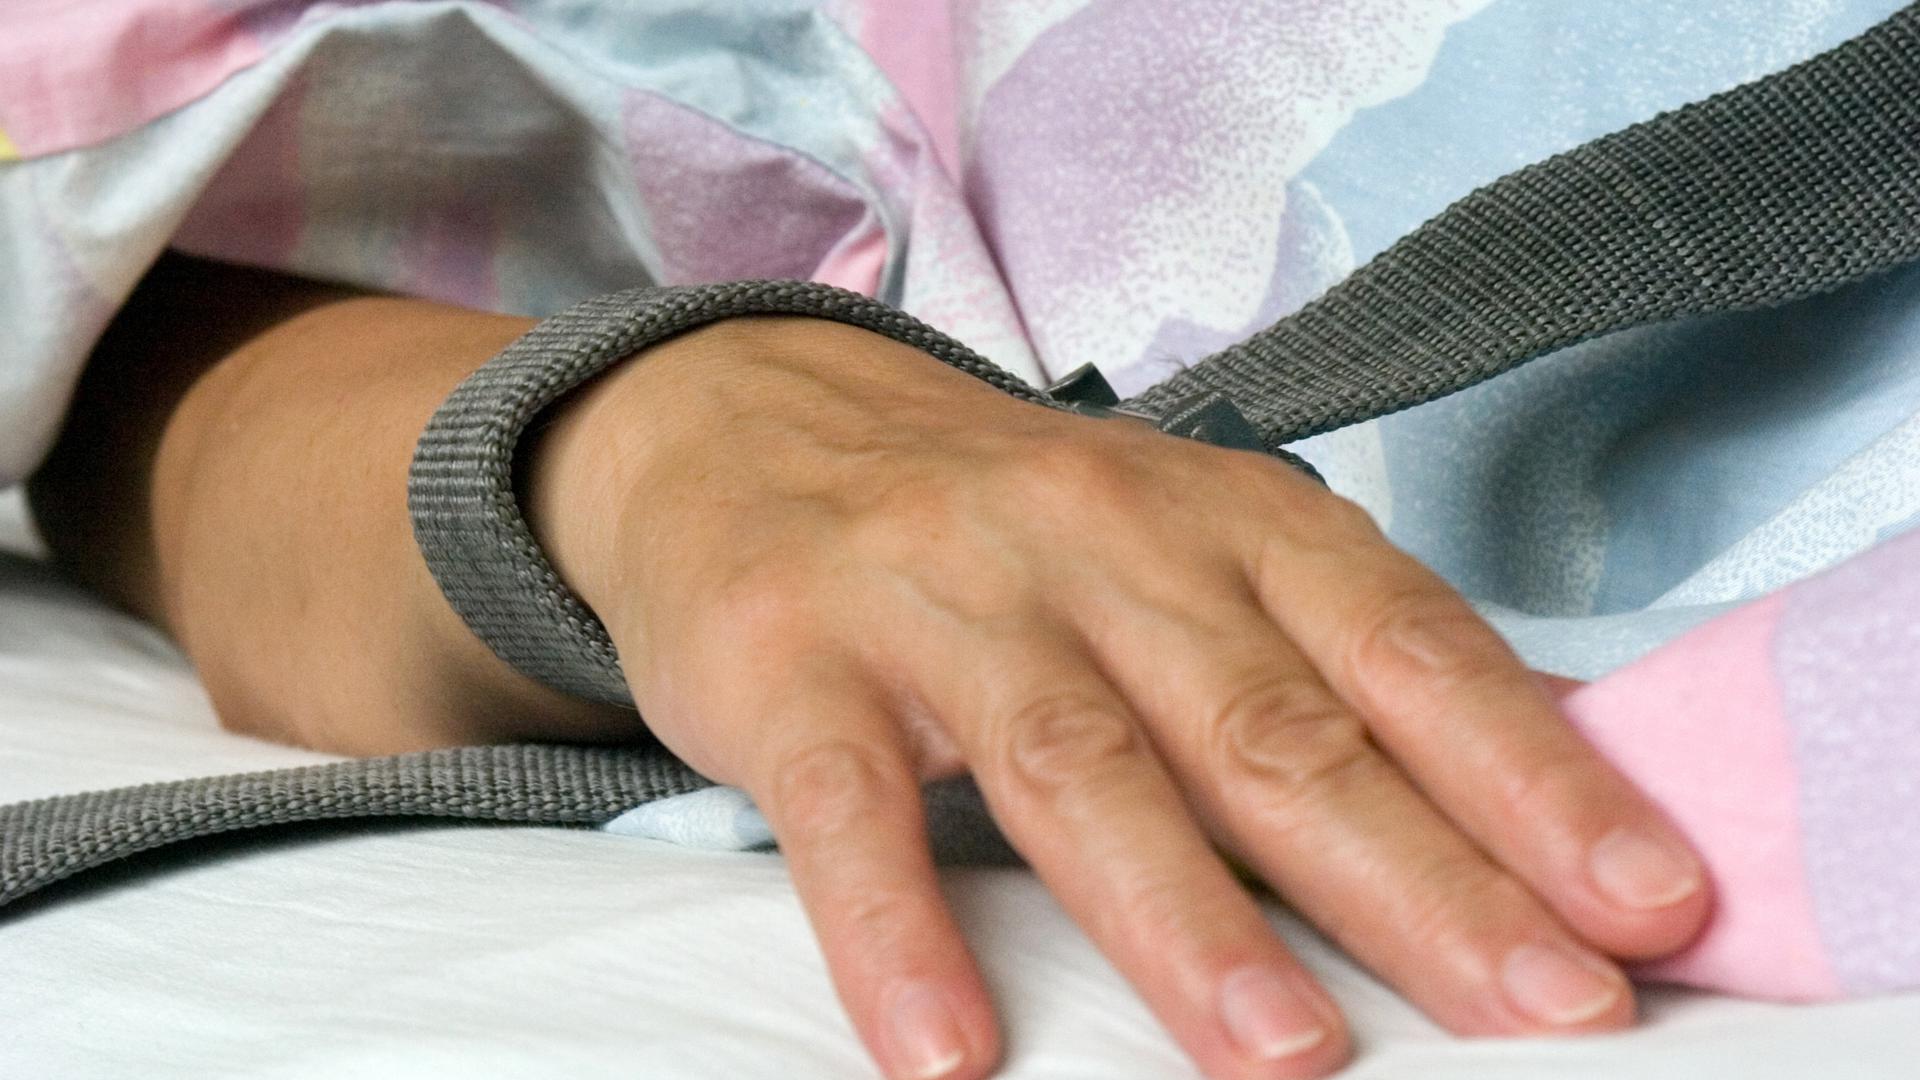 Eine mit einem Textilband festgebundene Hand eines Patienten - die Fixierung bzw. Fixation eines Patienten in der Krankenpflege durch Festschnallen am Handgelenk. 